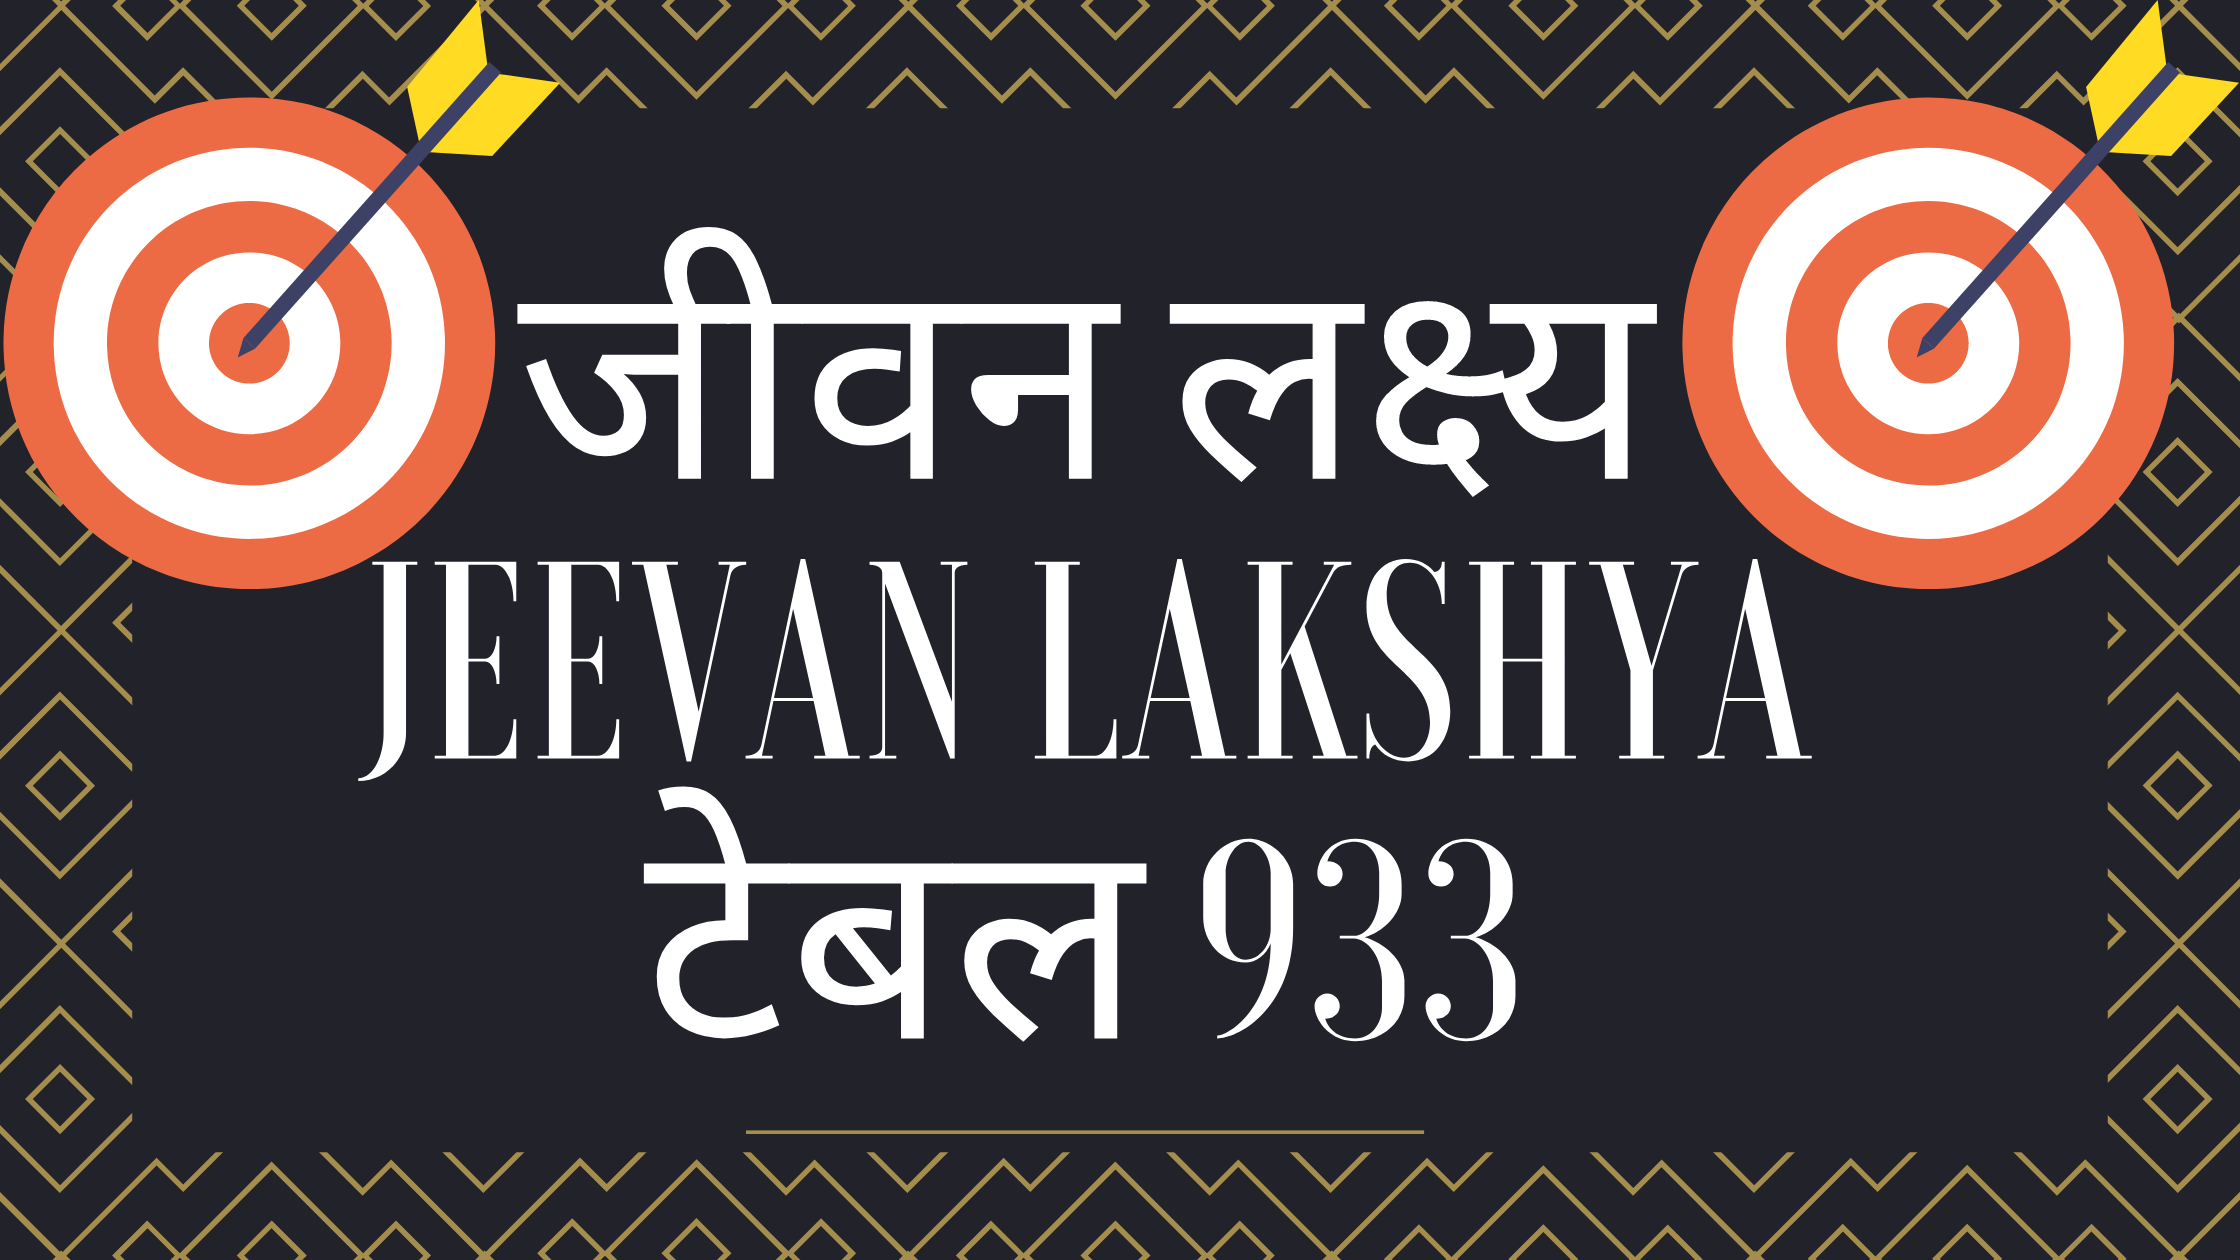 Read more about the article एल आई सी जीवन लक्ष्य प्लान टेबल 933 हिंदी में LIC Jeevan Lakshya 933 plan details is the best